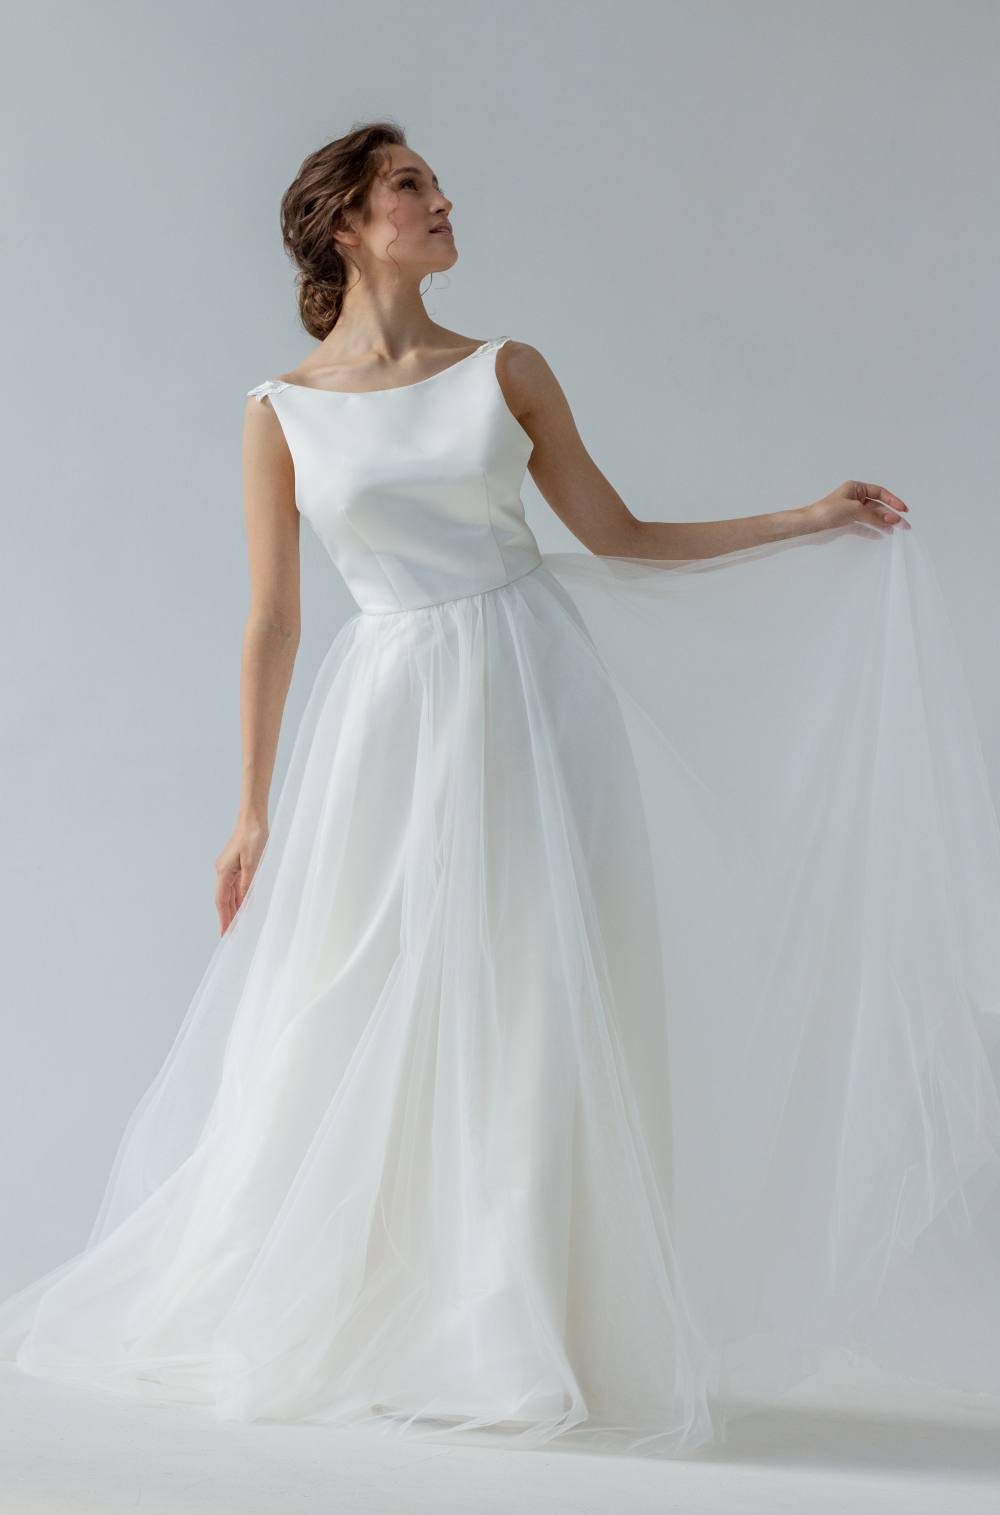 Свадебное воздушное платье оттенка Айвори с открытой спинкой. Воздушная фатиновая юбка струится, как облако. Лаконичный крой и легкость в образе невесты. Размер 42-44.